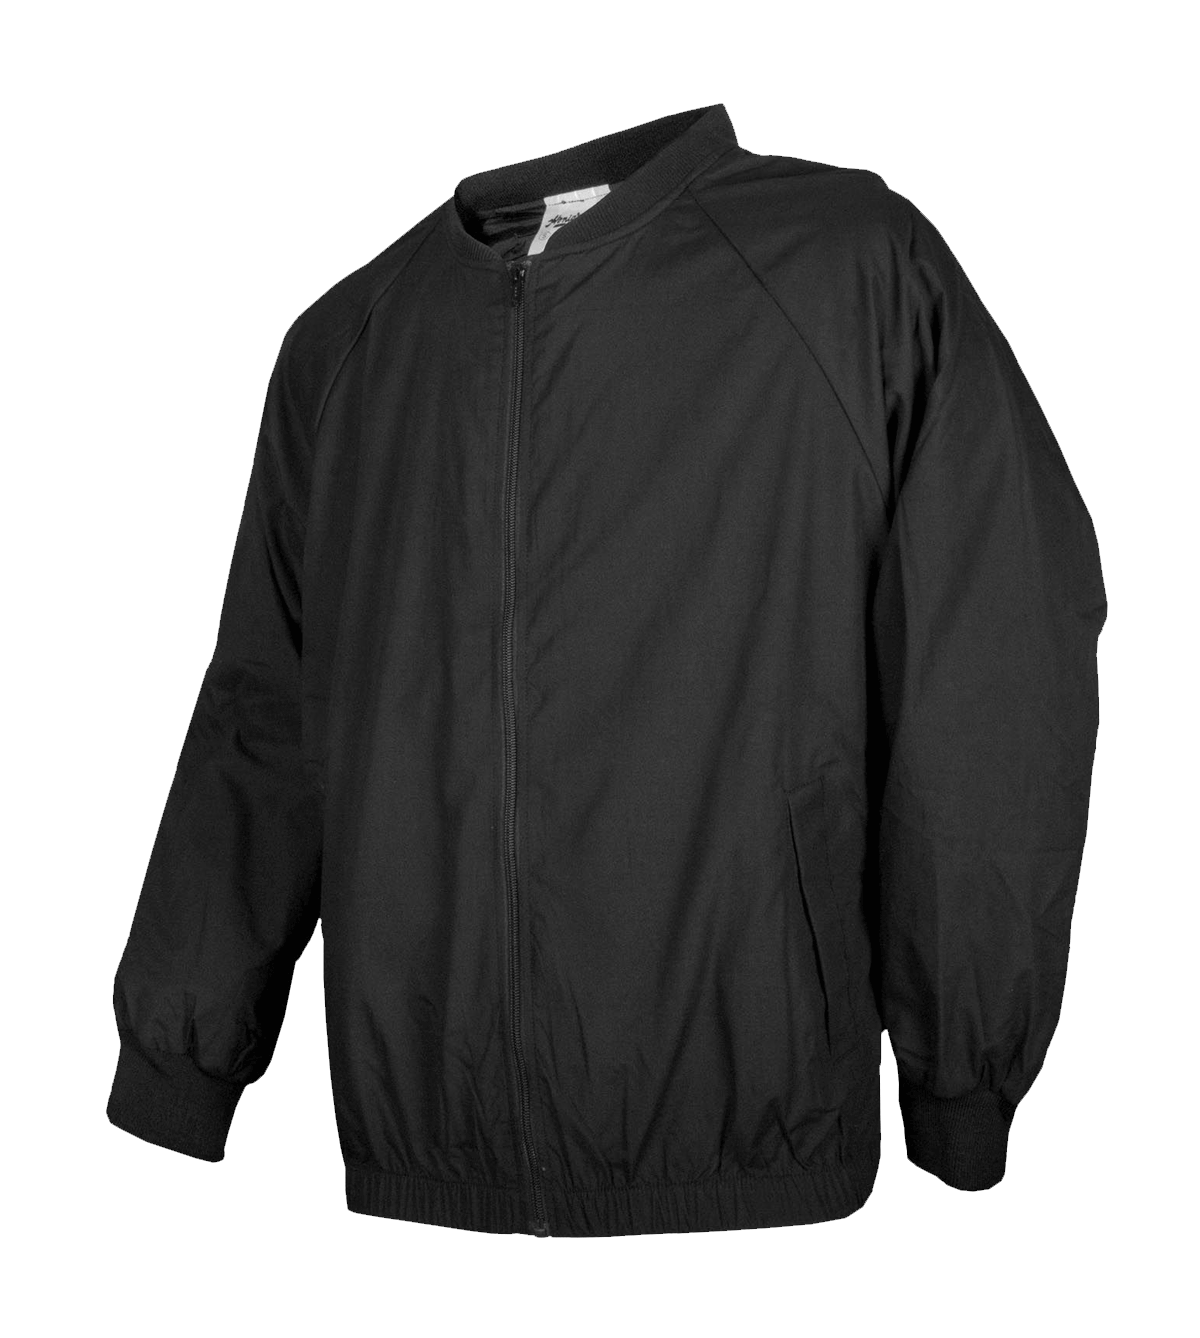 HONIG'S Zip Front Basketball Jacket | distinctiverecognition.com